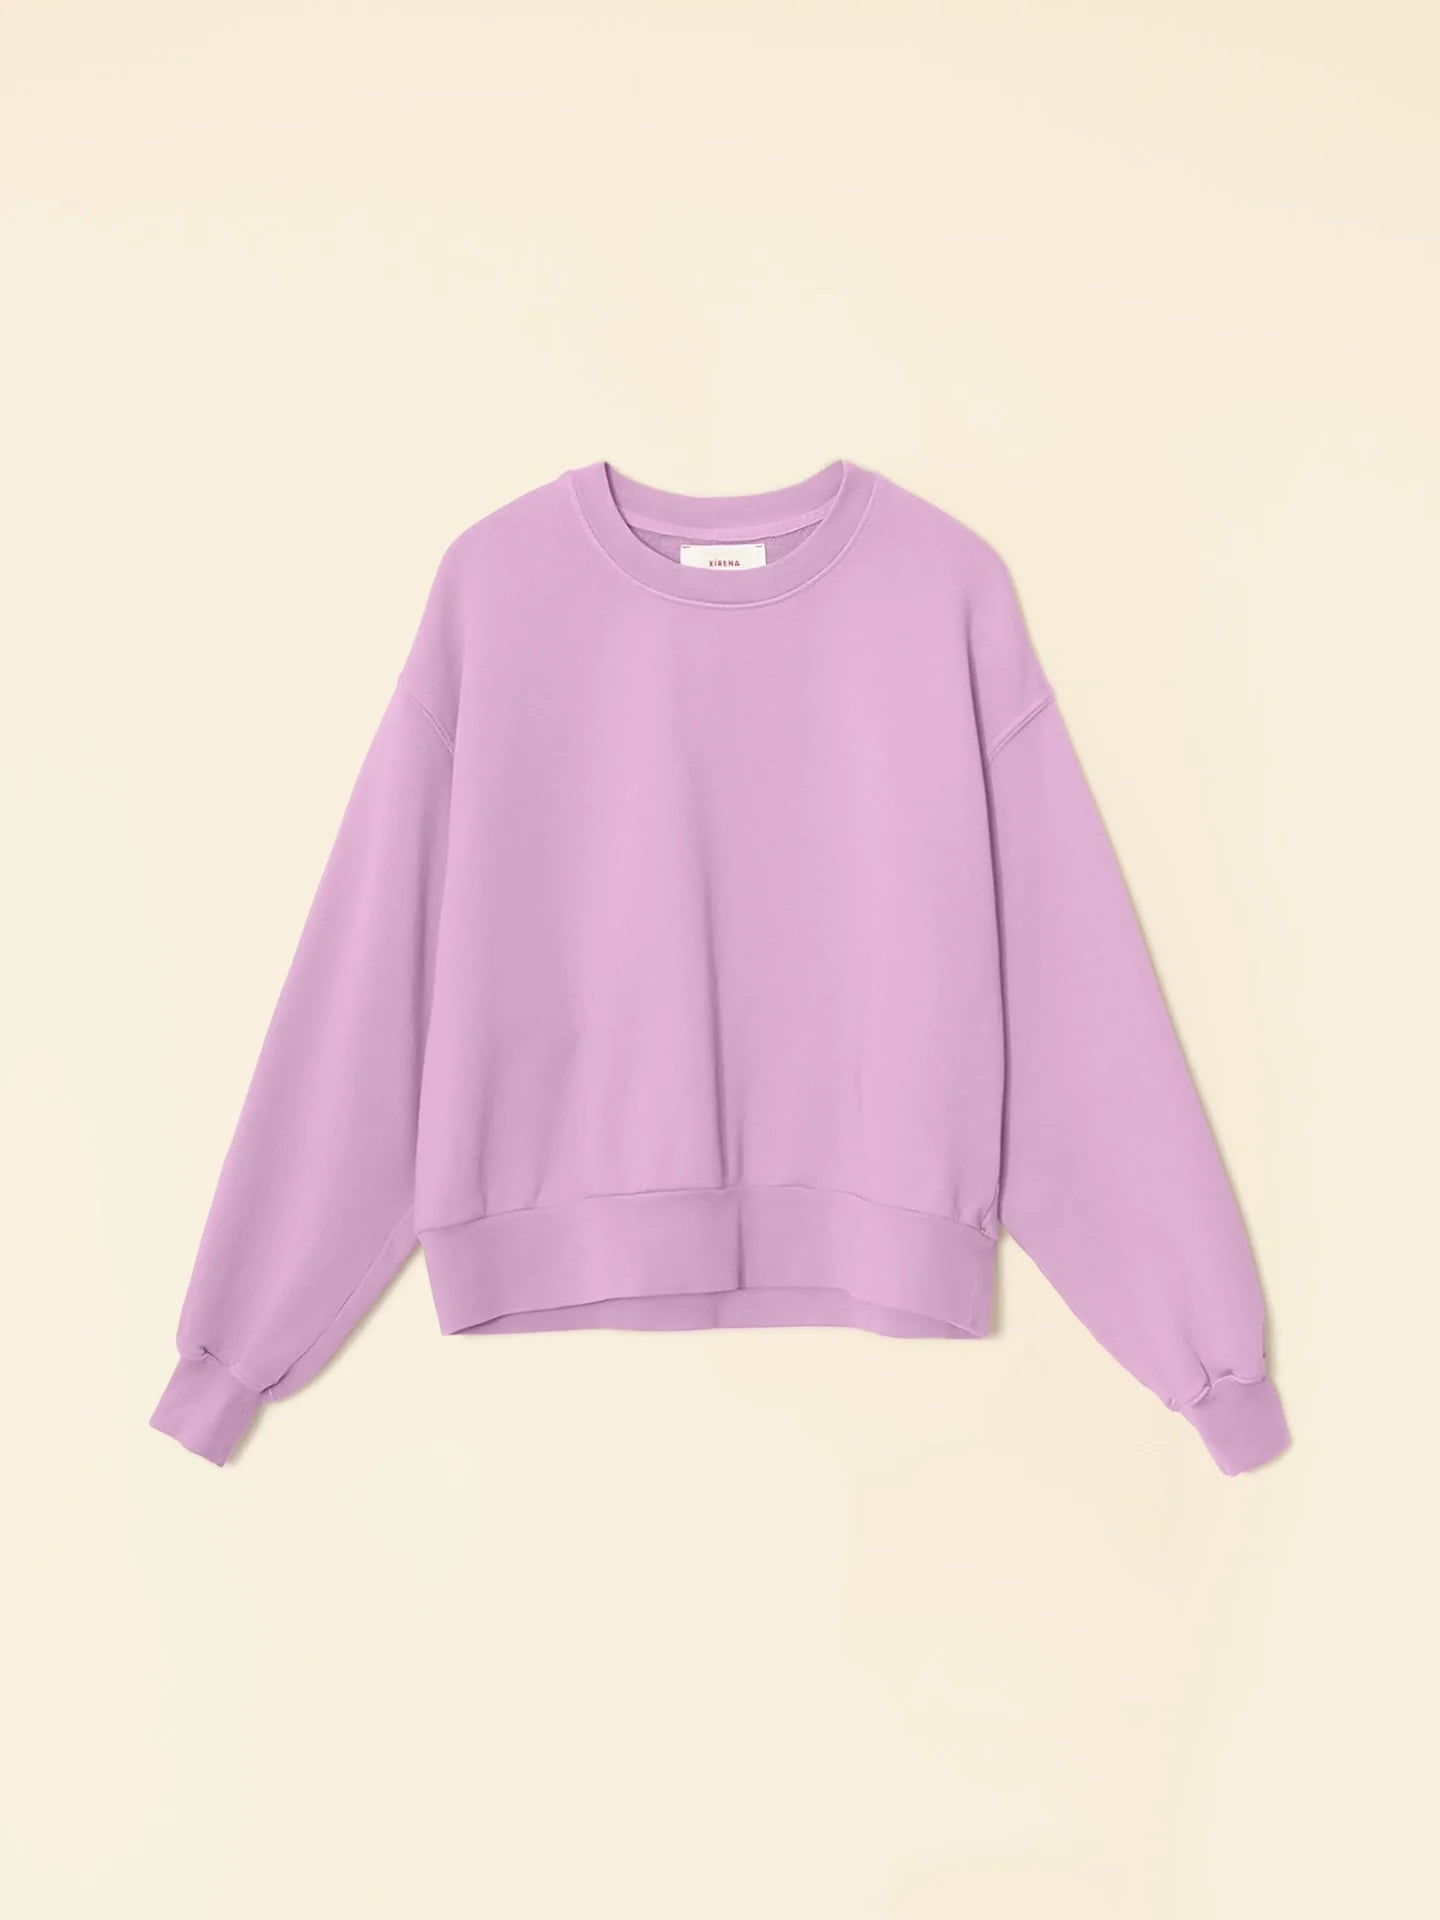 Huxley Sweatshirt in Dusty Lavender